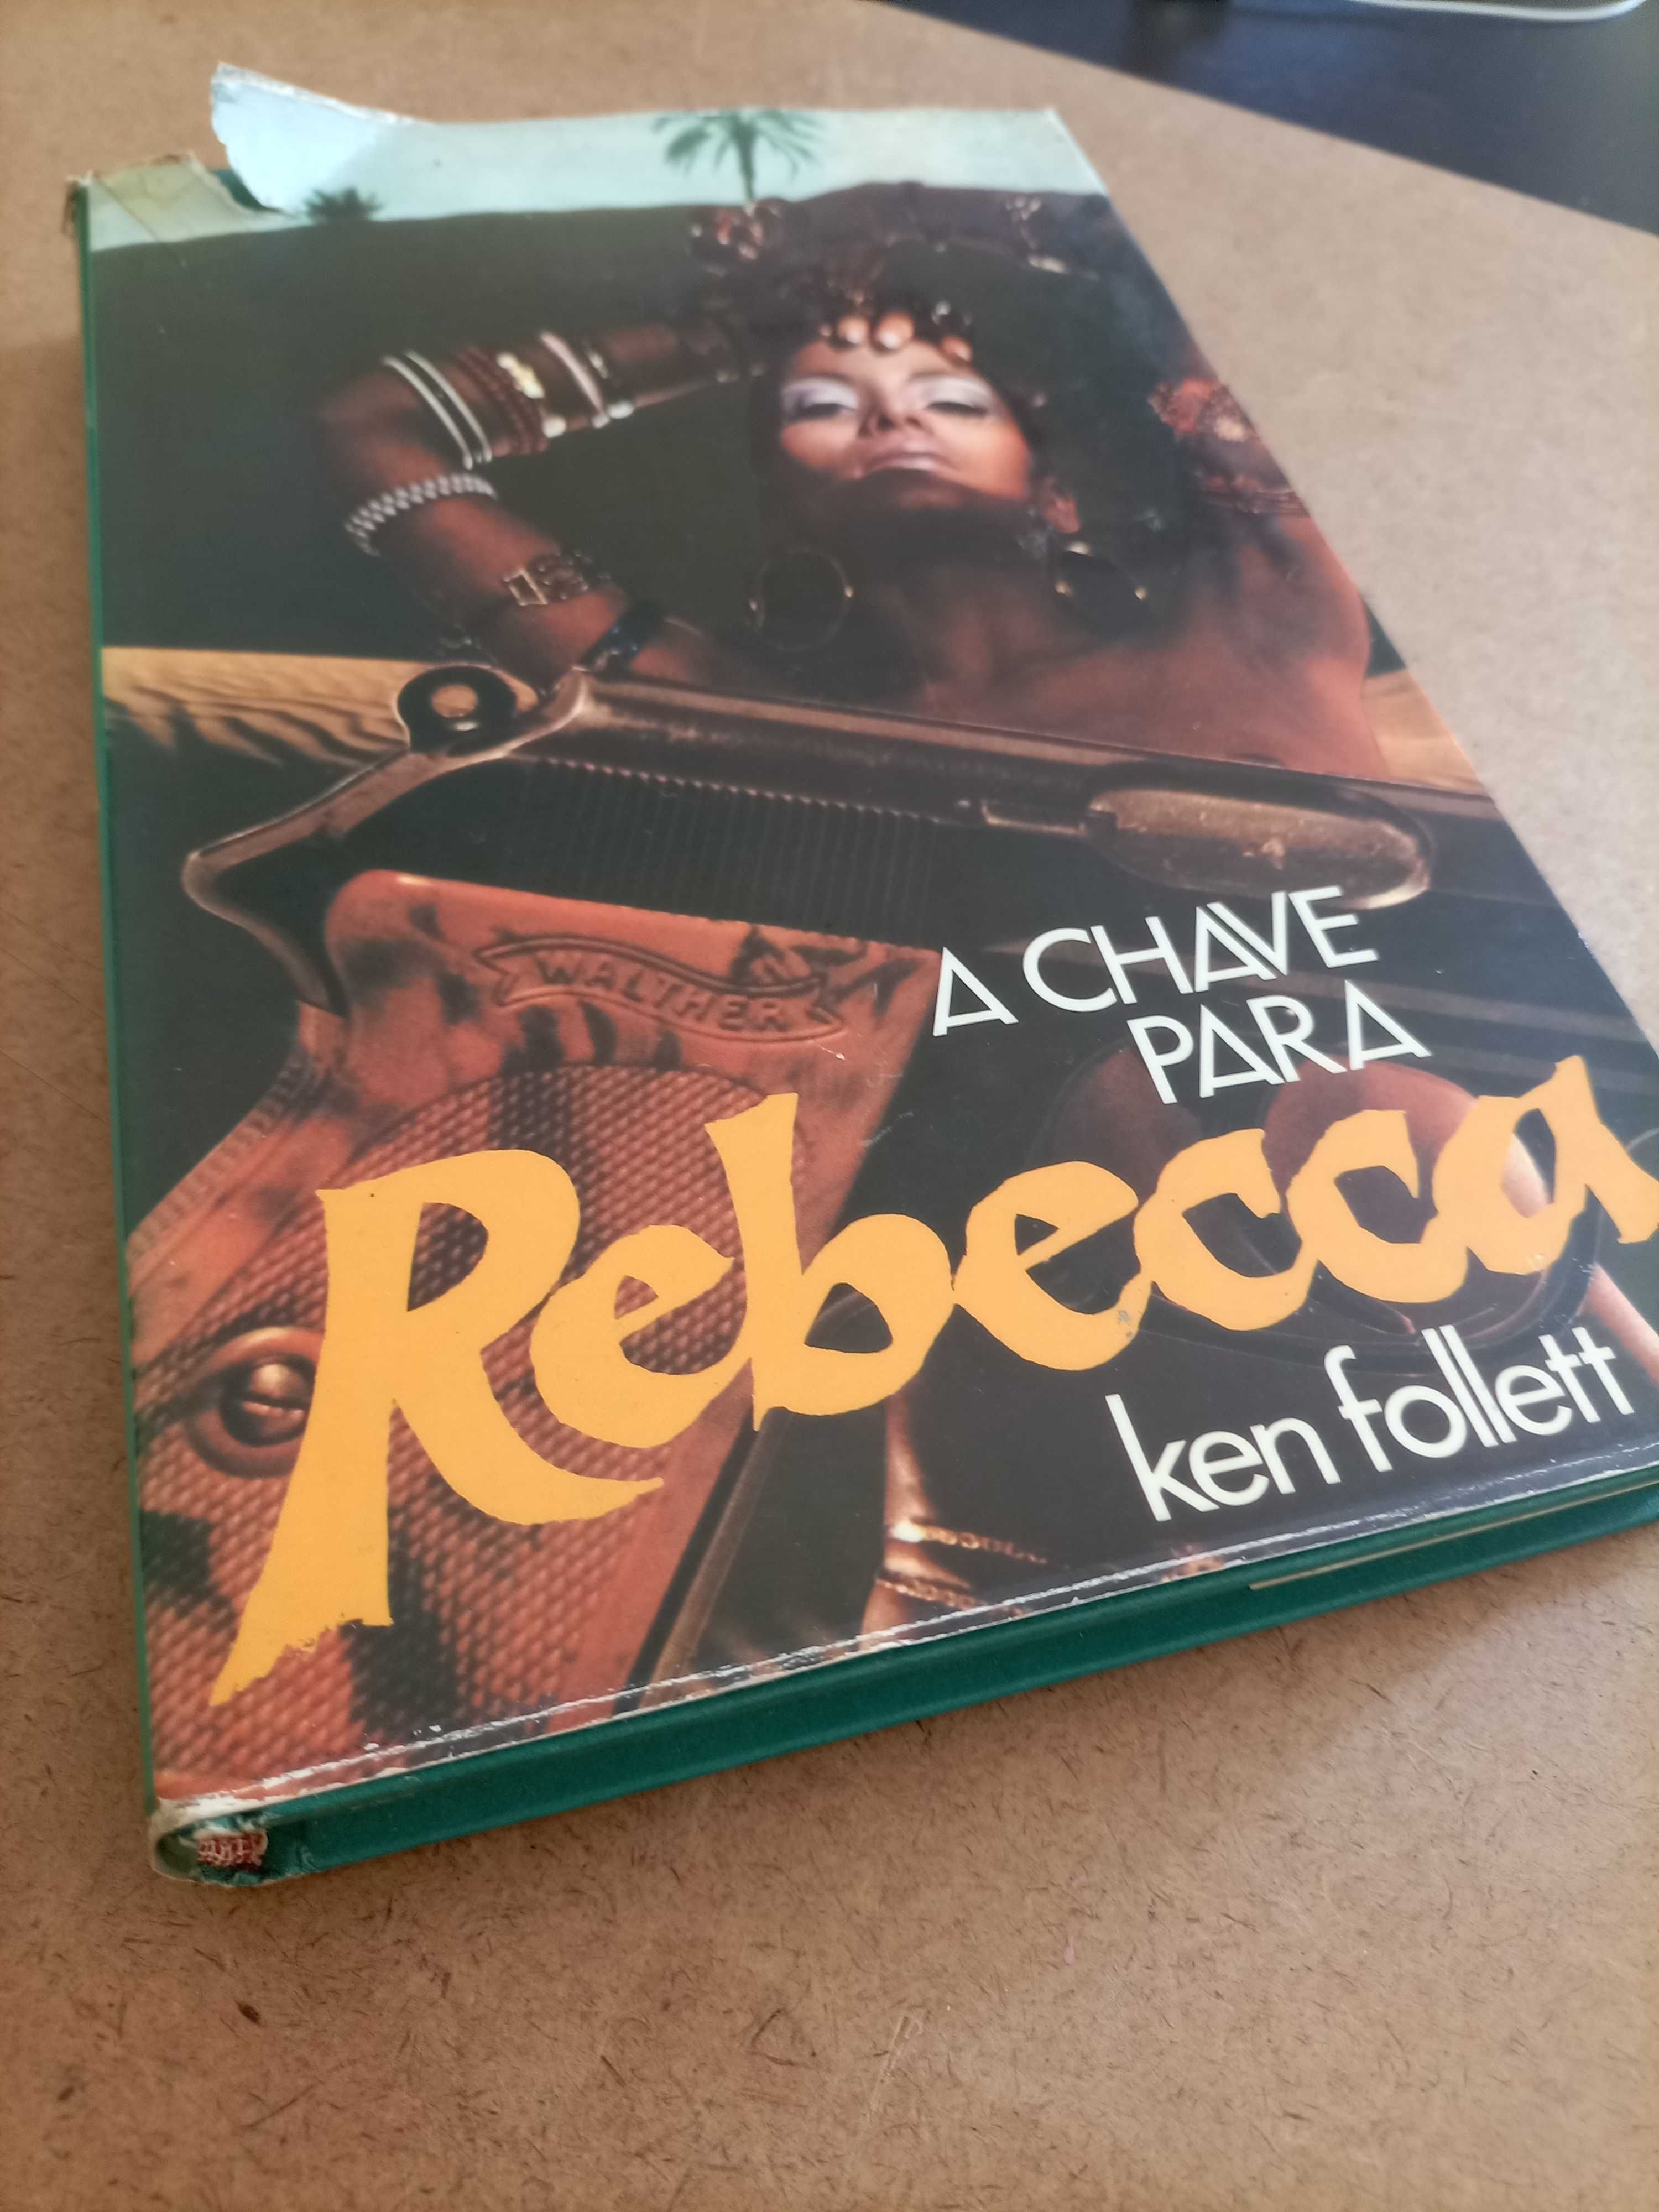 A Chave Para Rebecca - Ken Follett